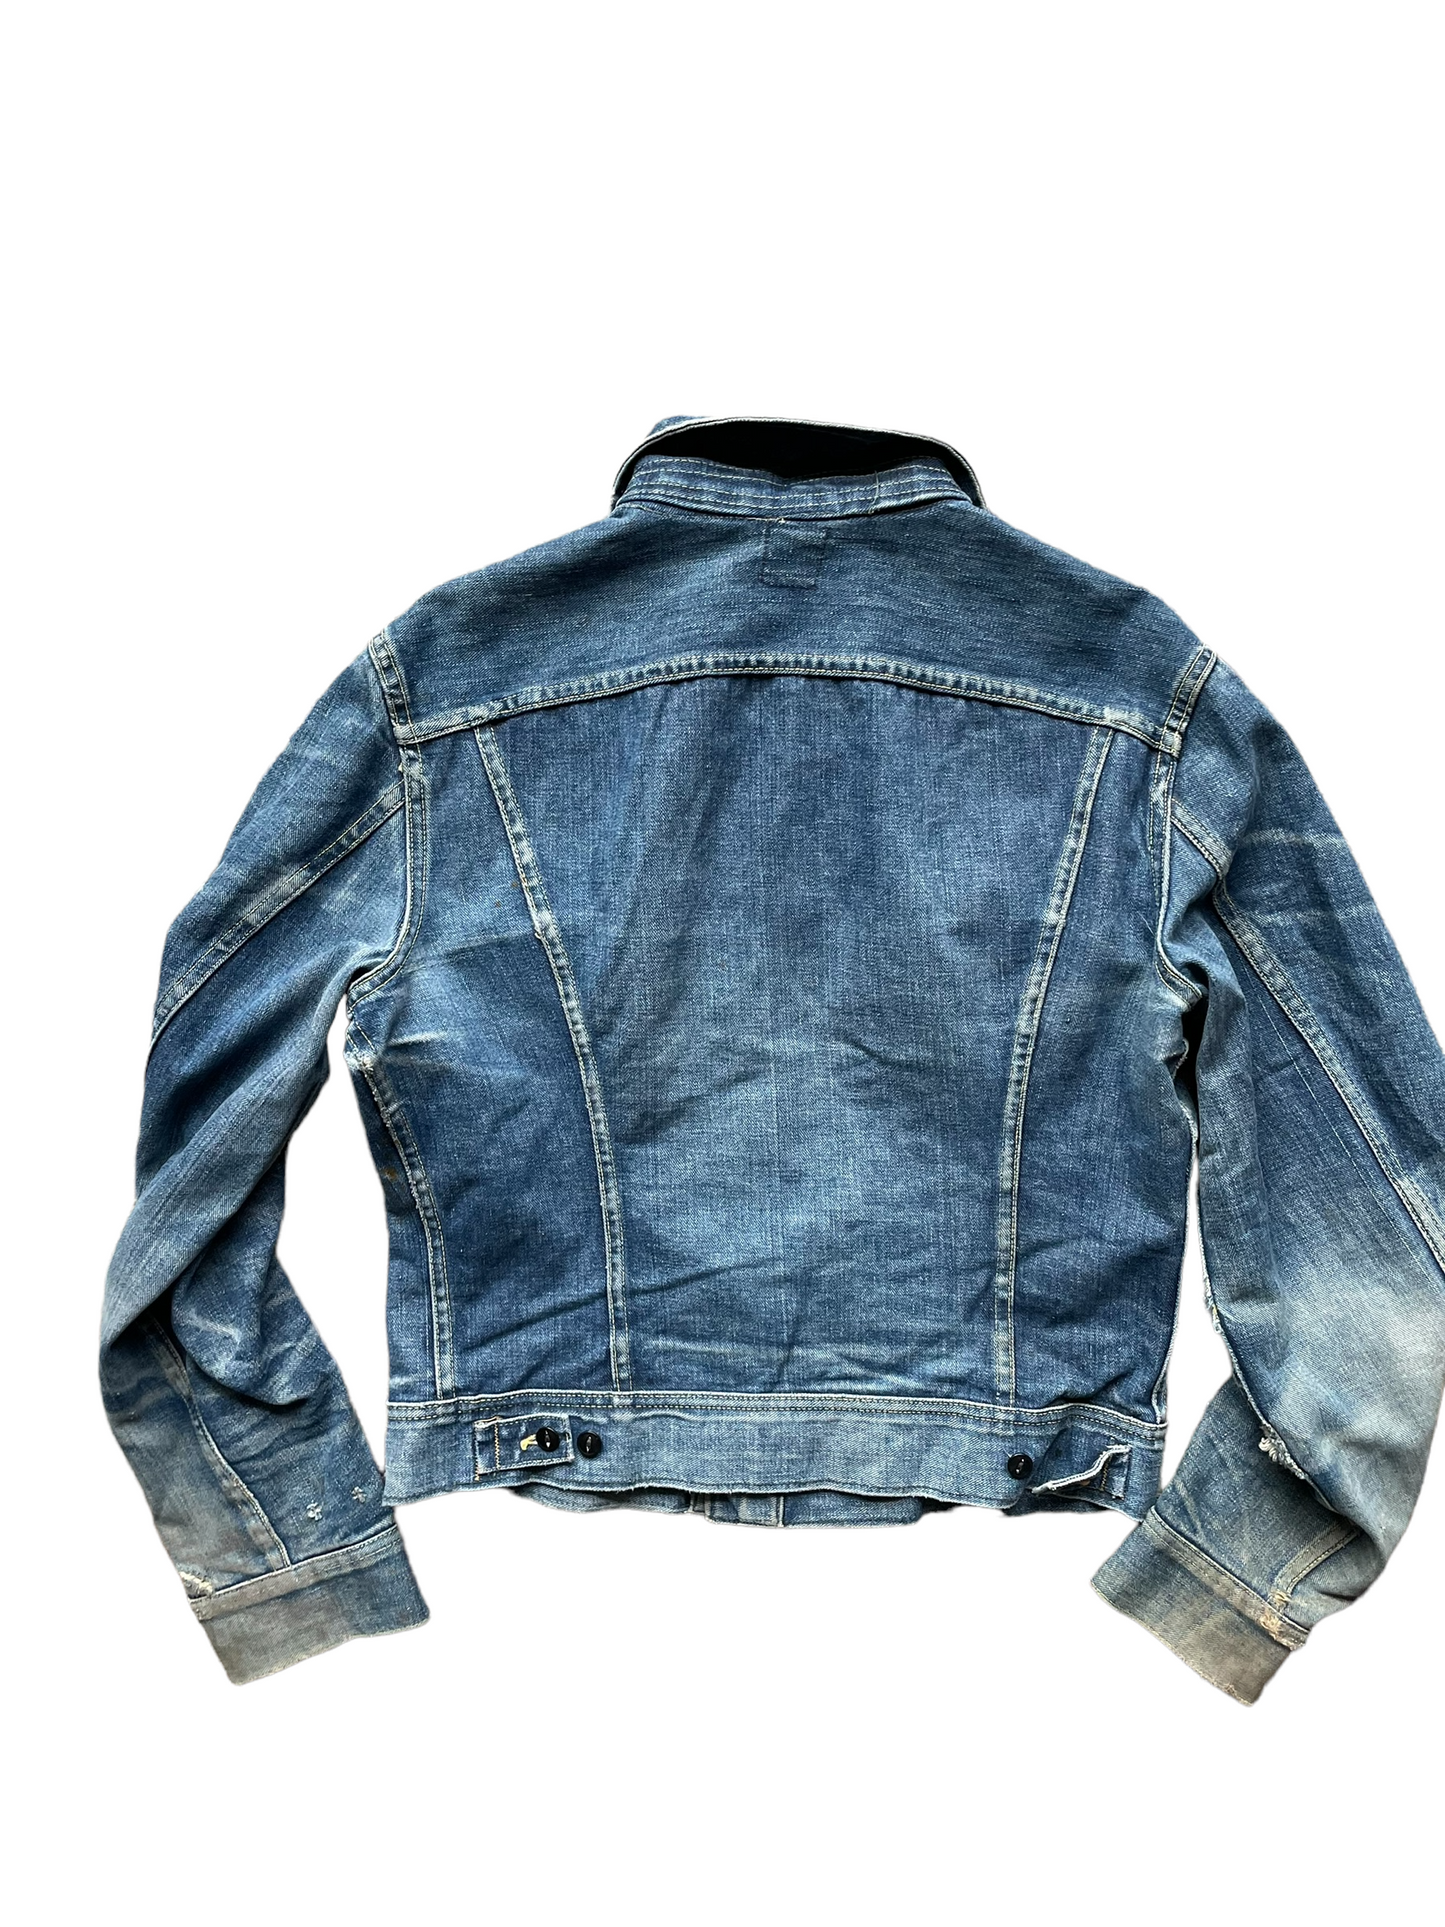 Vintage 70's Lee 101-J Denim Jacket Full back view